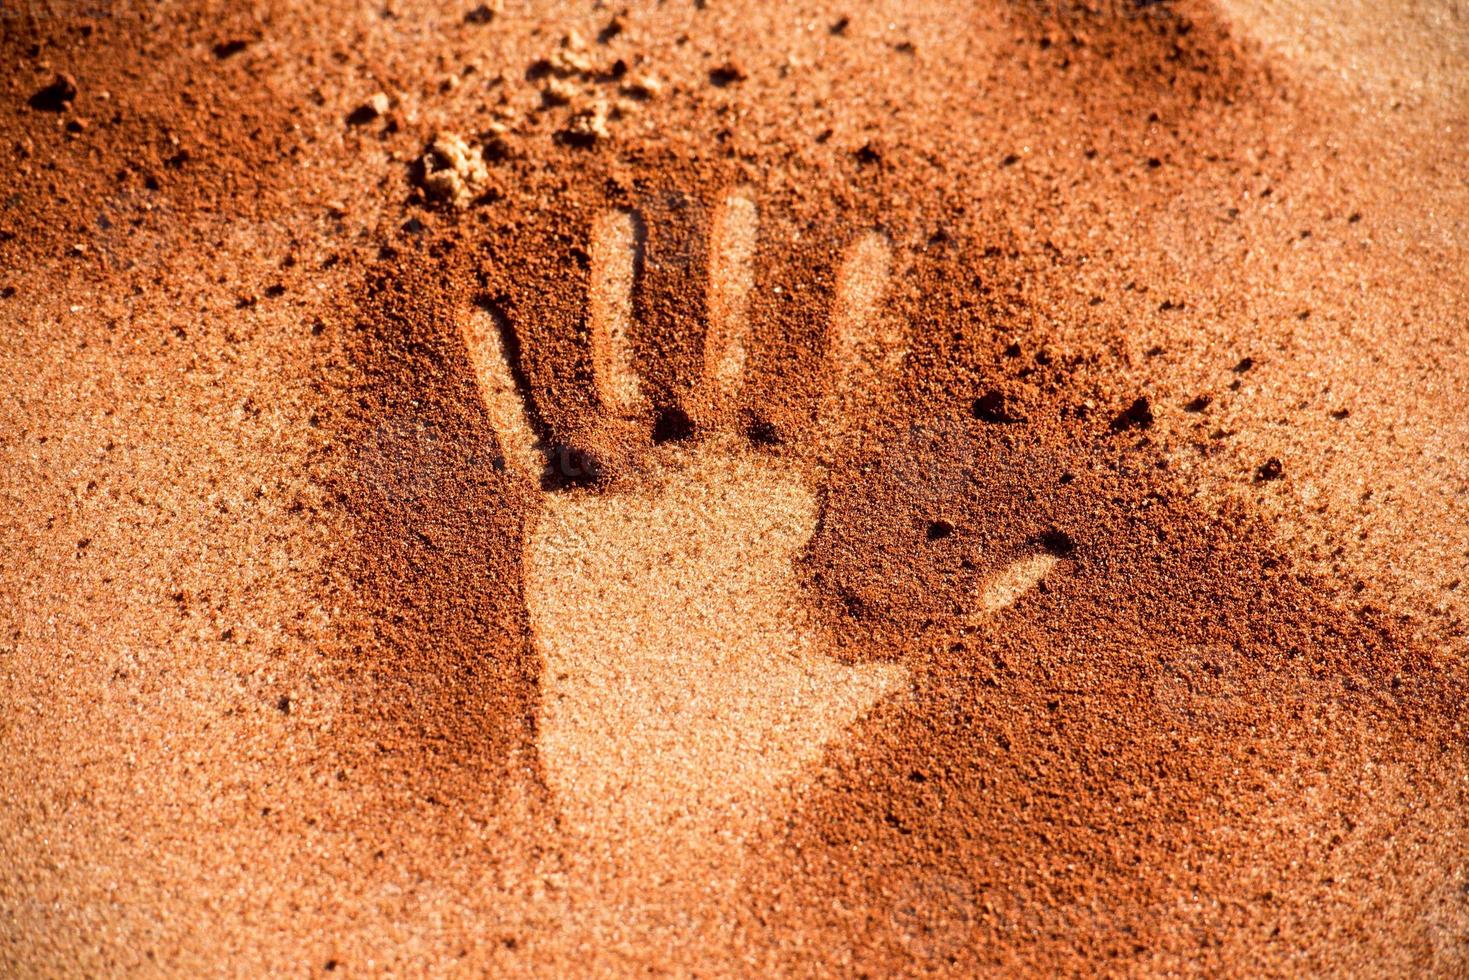 forme de main de sol rouge sur le sable comme le style d'art aborigène photo